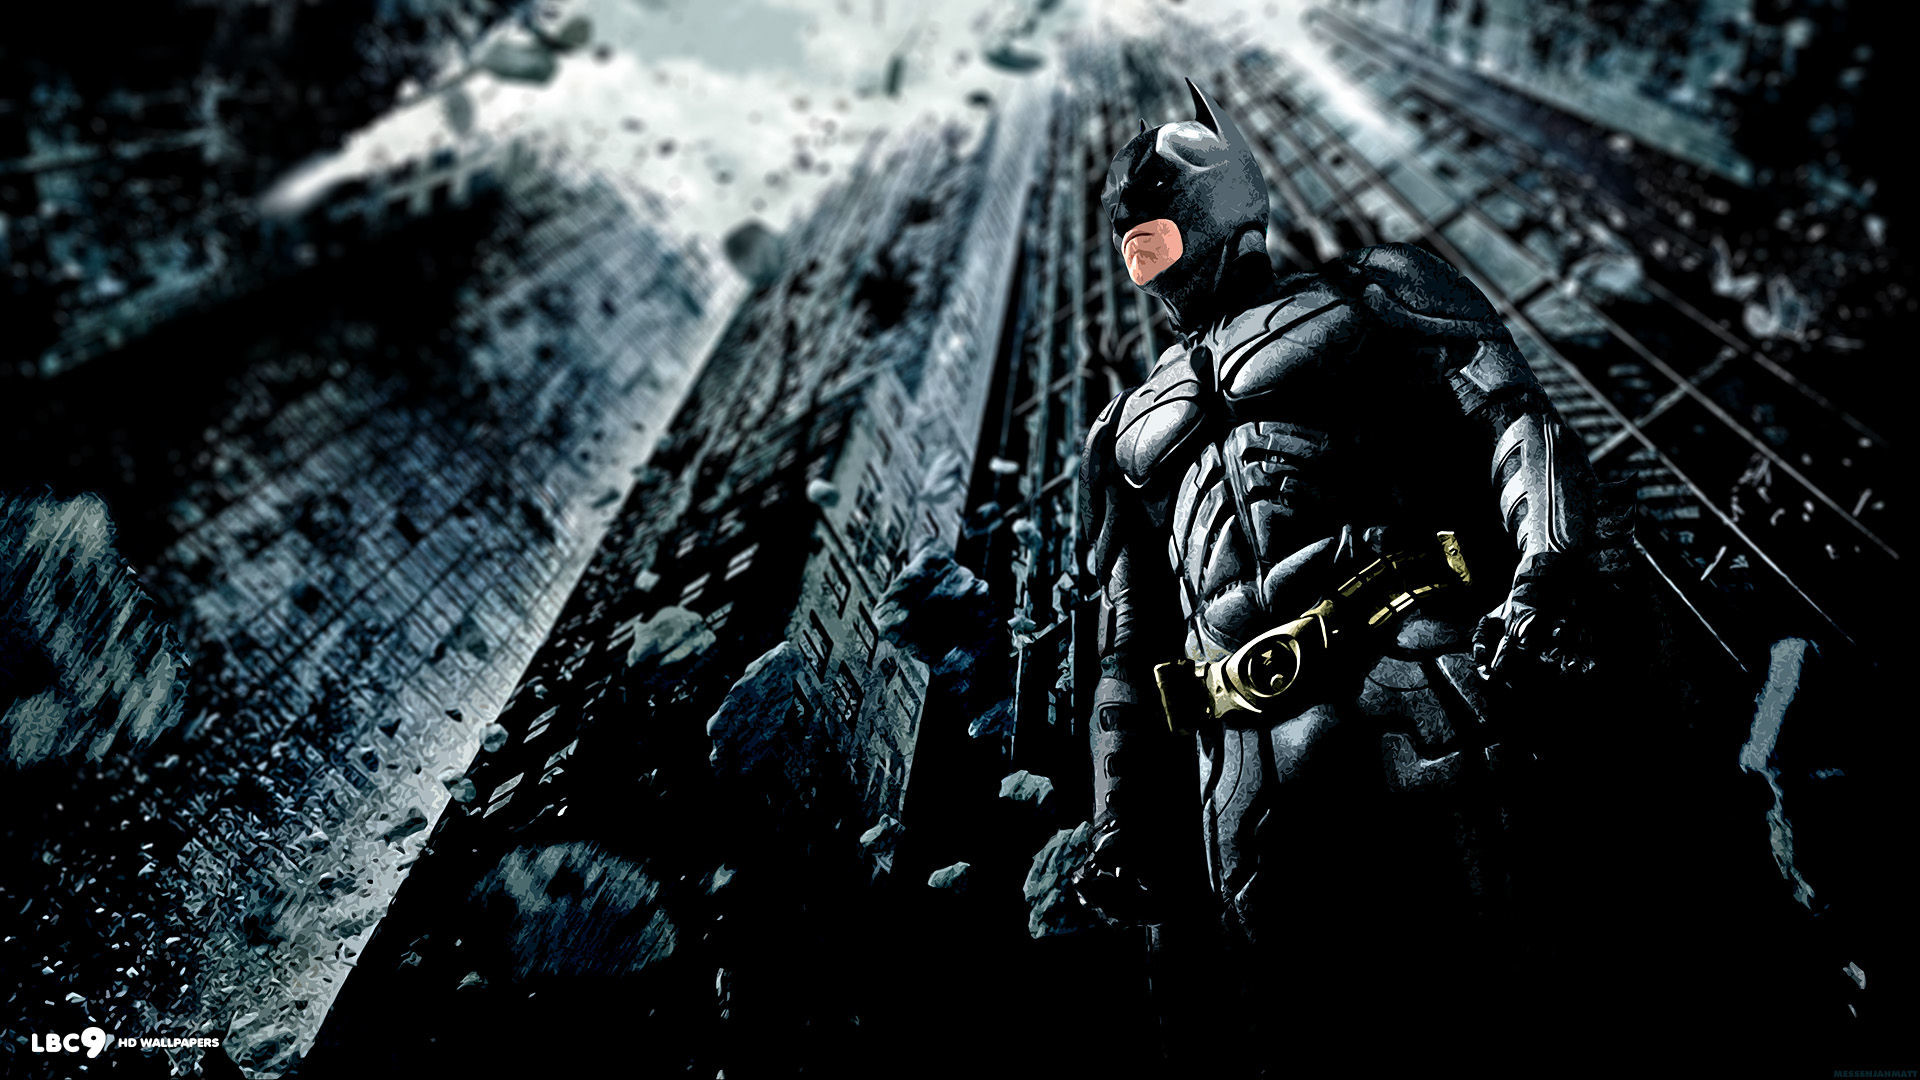 1920x1080 Batman The Dark Knight Rises HD Wallpaper | Wallpapers | Pinterest | Dark  knight and Hd wallpaper